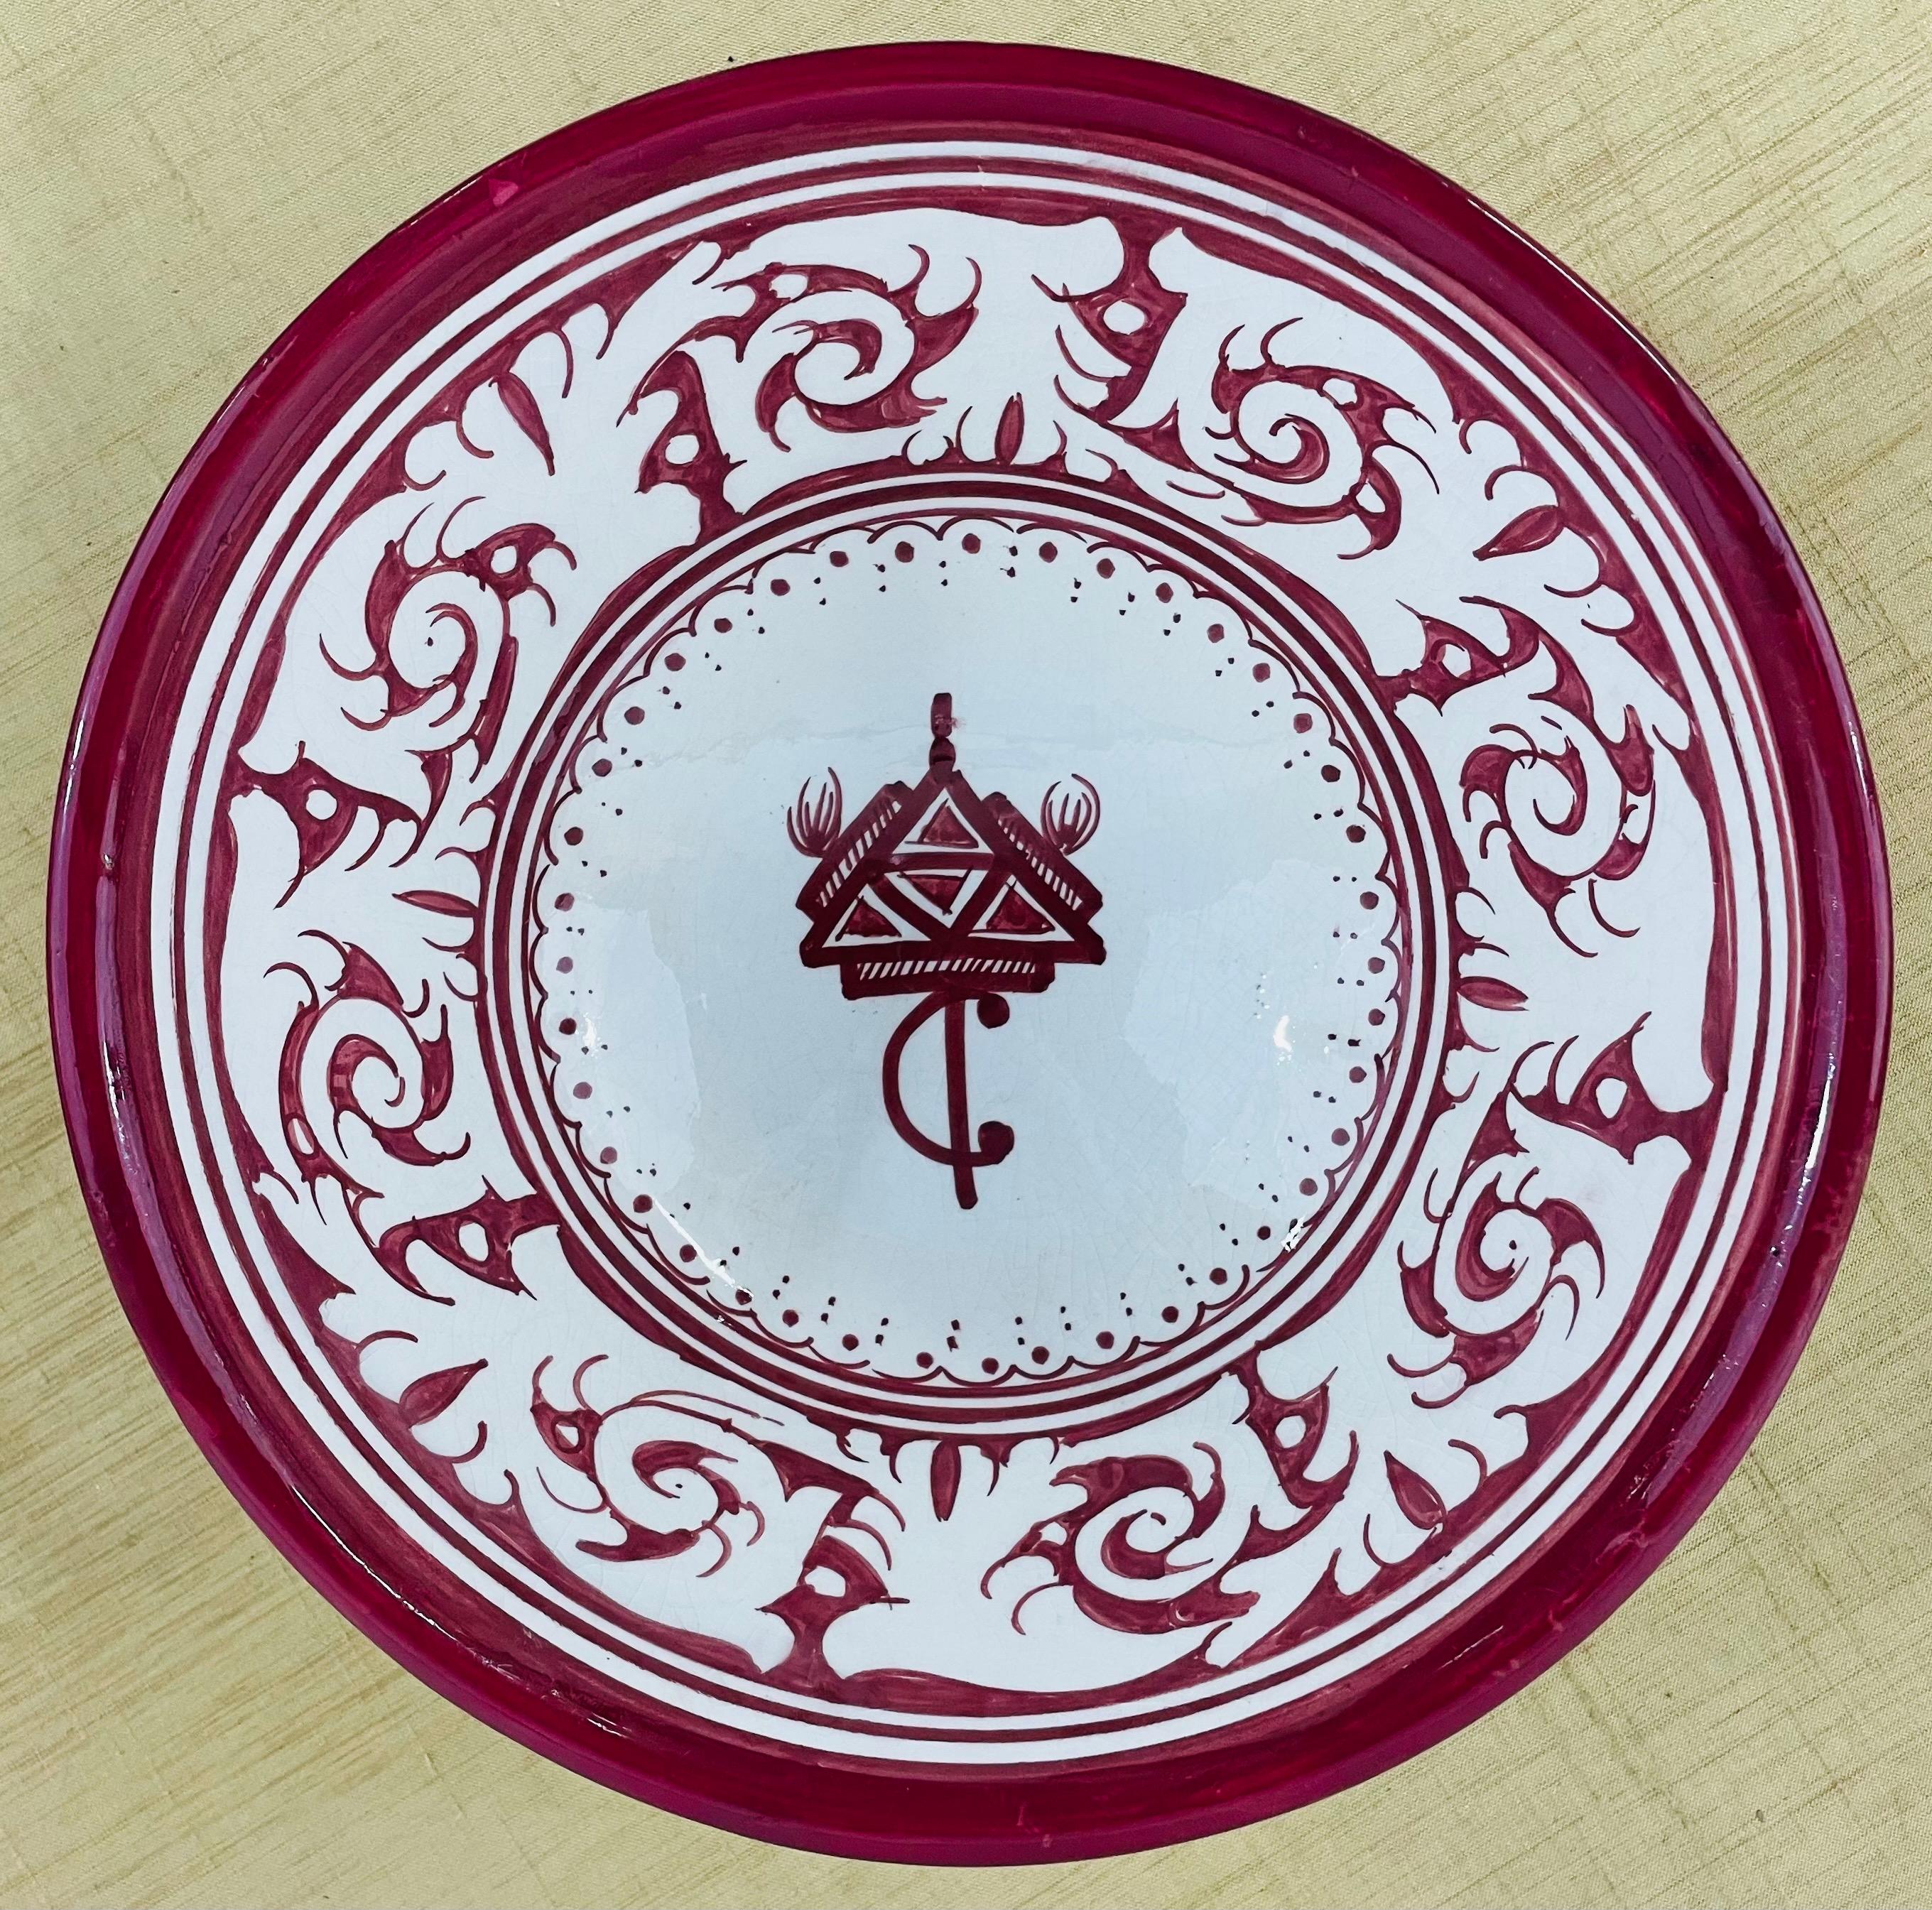 Un ensemble de 4 grands bols en céramique marocaine tribale vintage peints à la main. Dans un ton blanc et bordeaux, chaque bol présente de beaux motifs floraux et un triangle emblématique des tribus berbères du Maroc. 

Dimensions : 10.5